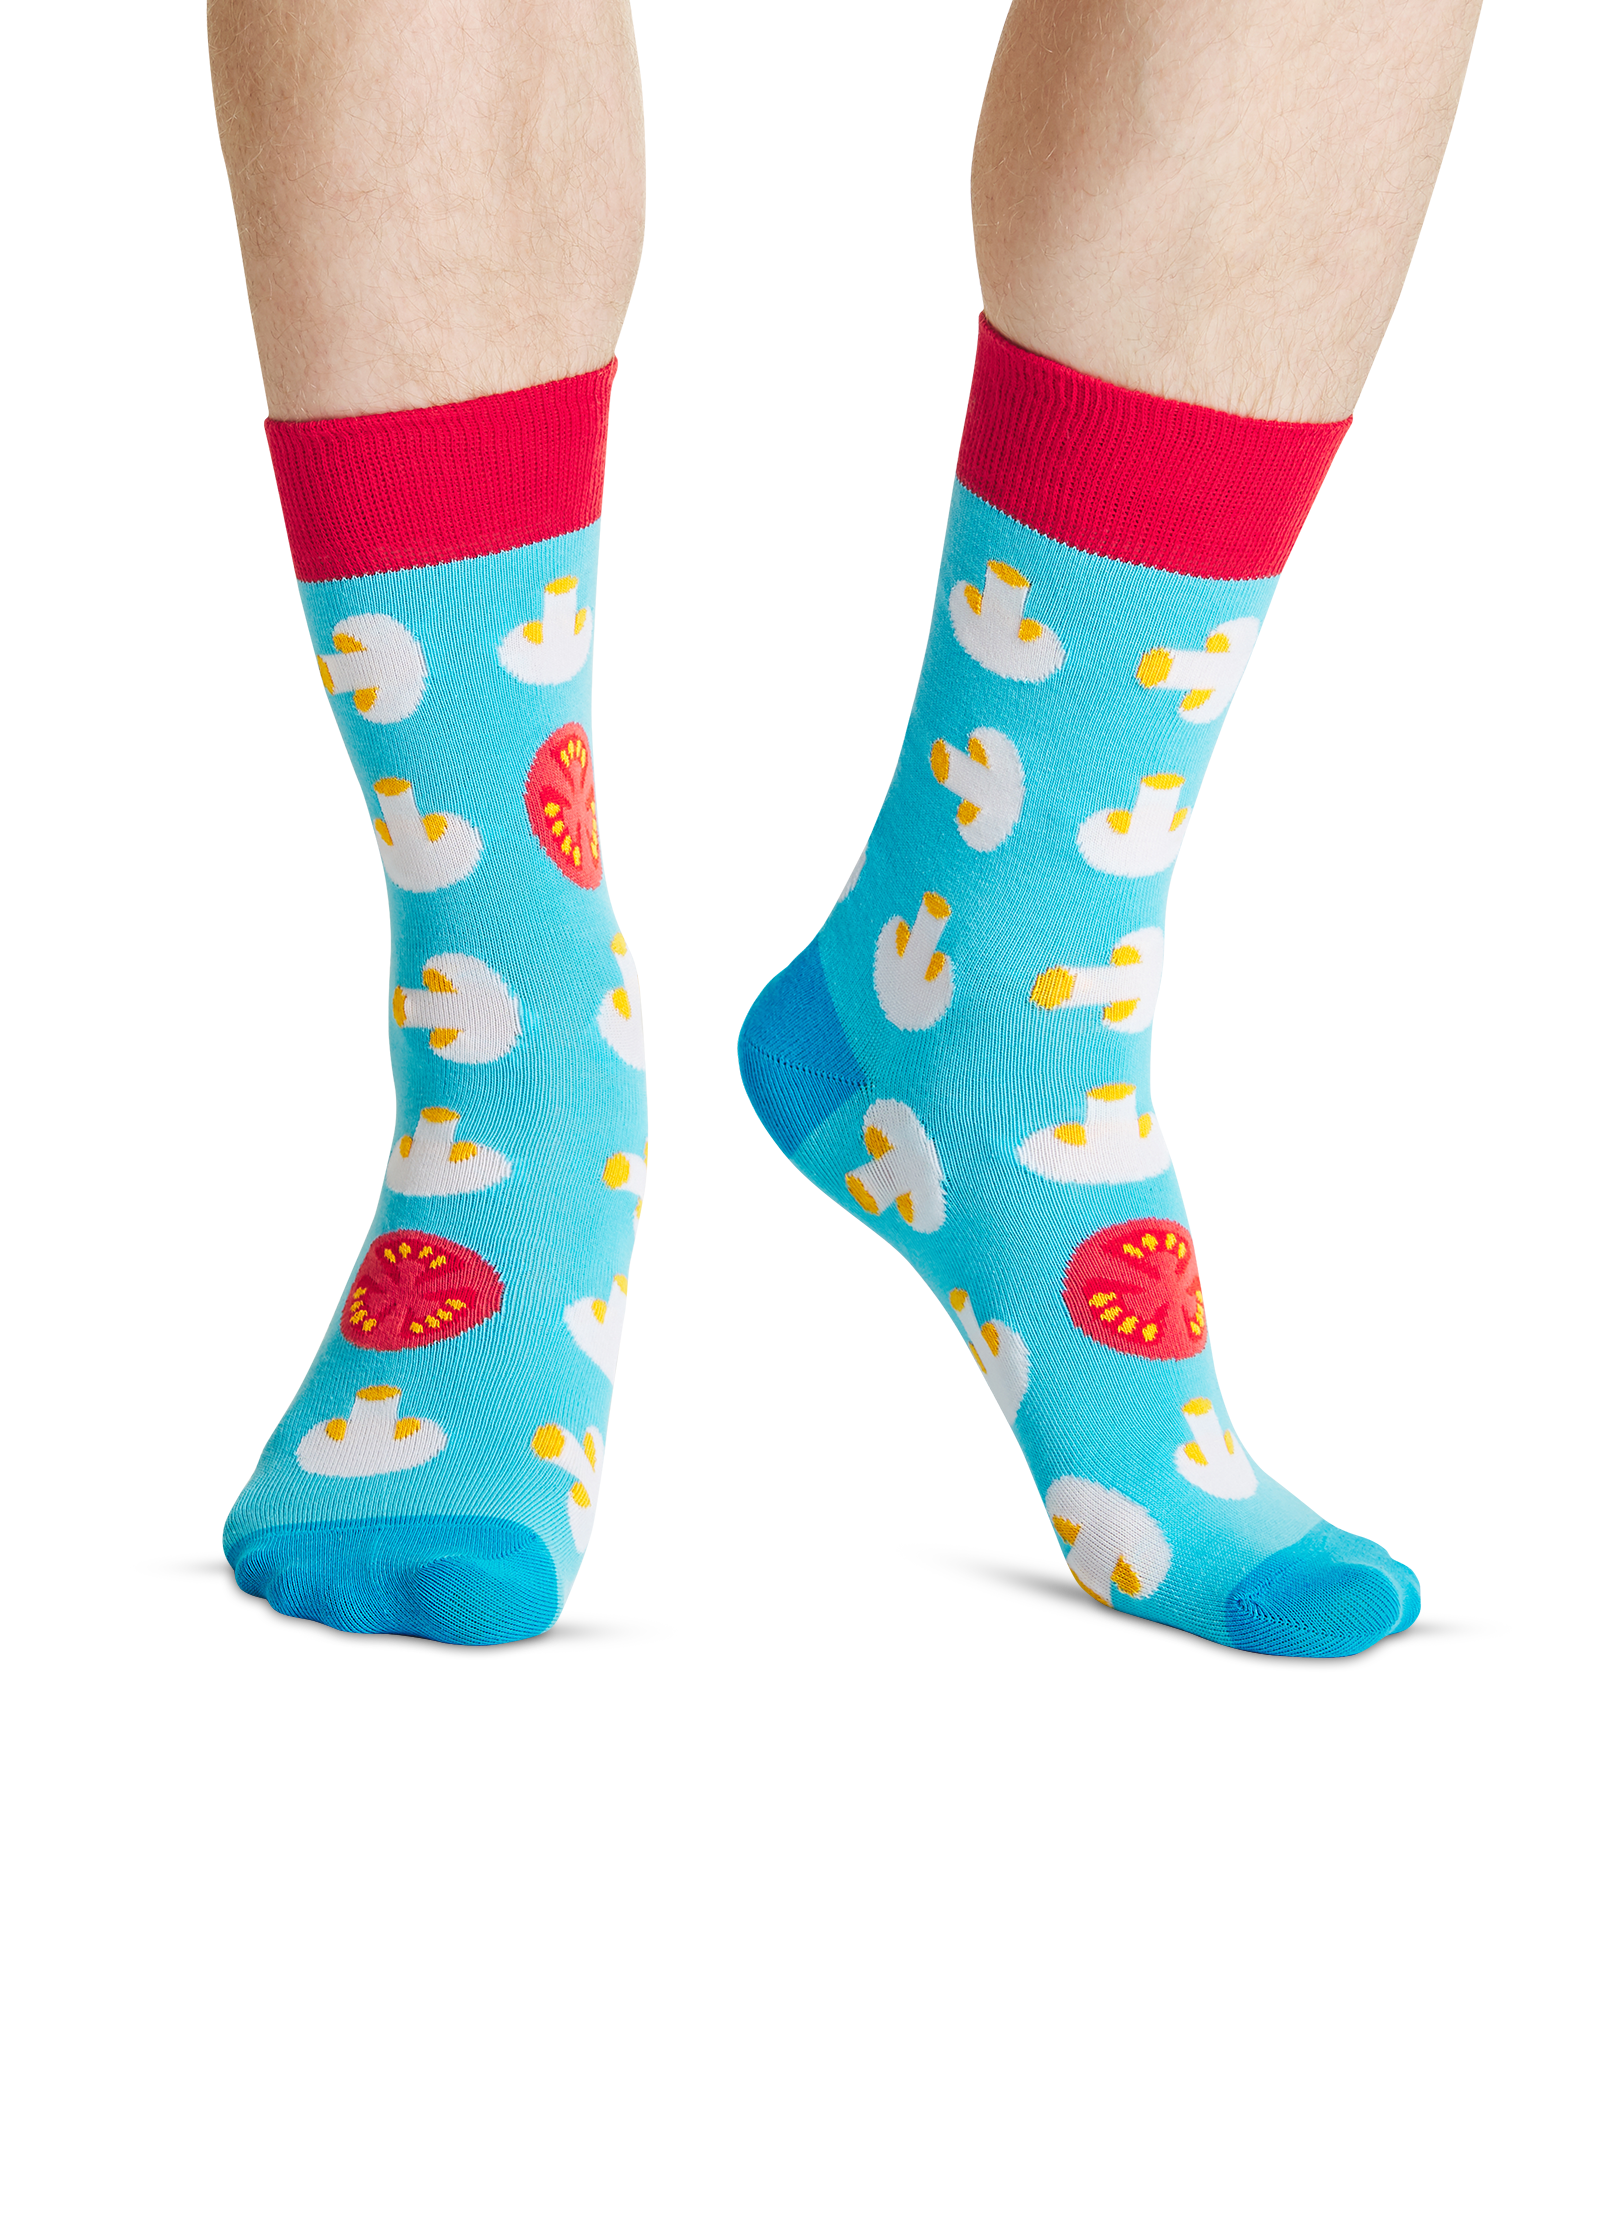 Haute cuisine | Funny colored socks | Buy funny colored socks for women ...